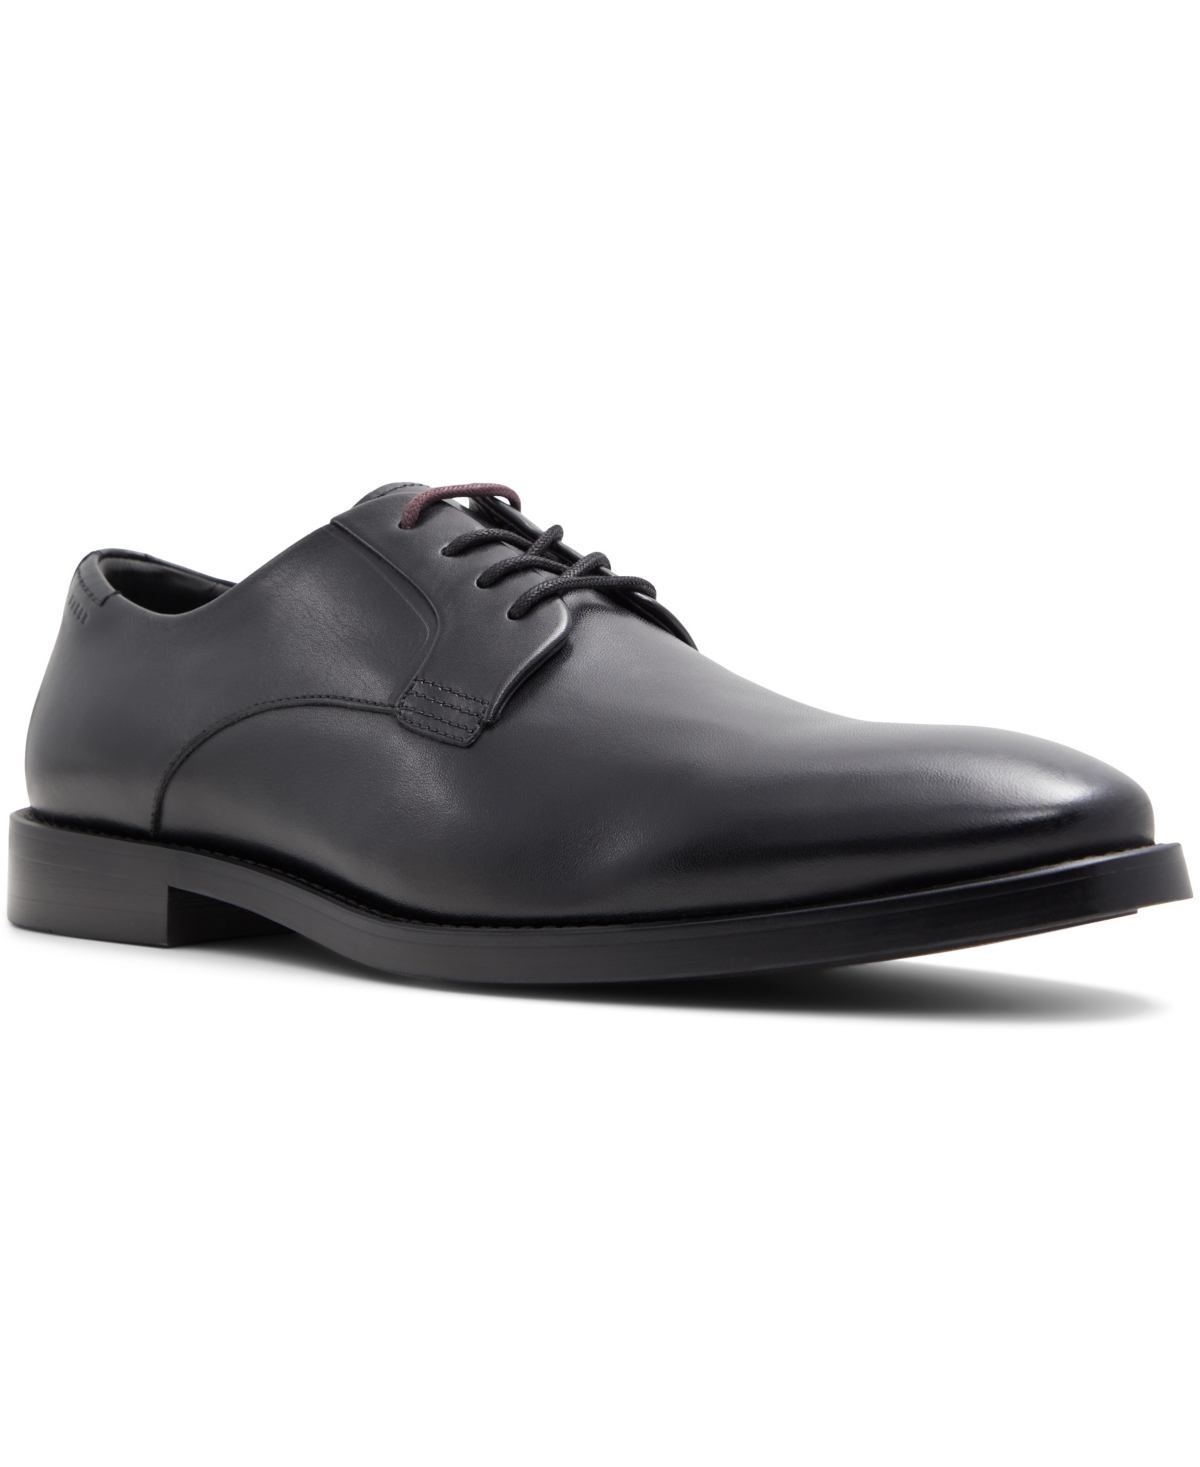 Men's Regent Dress Shoes - Other Black